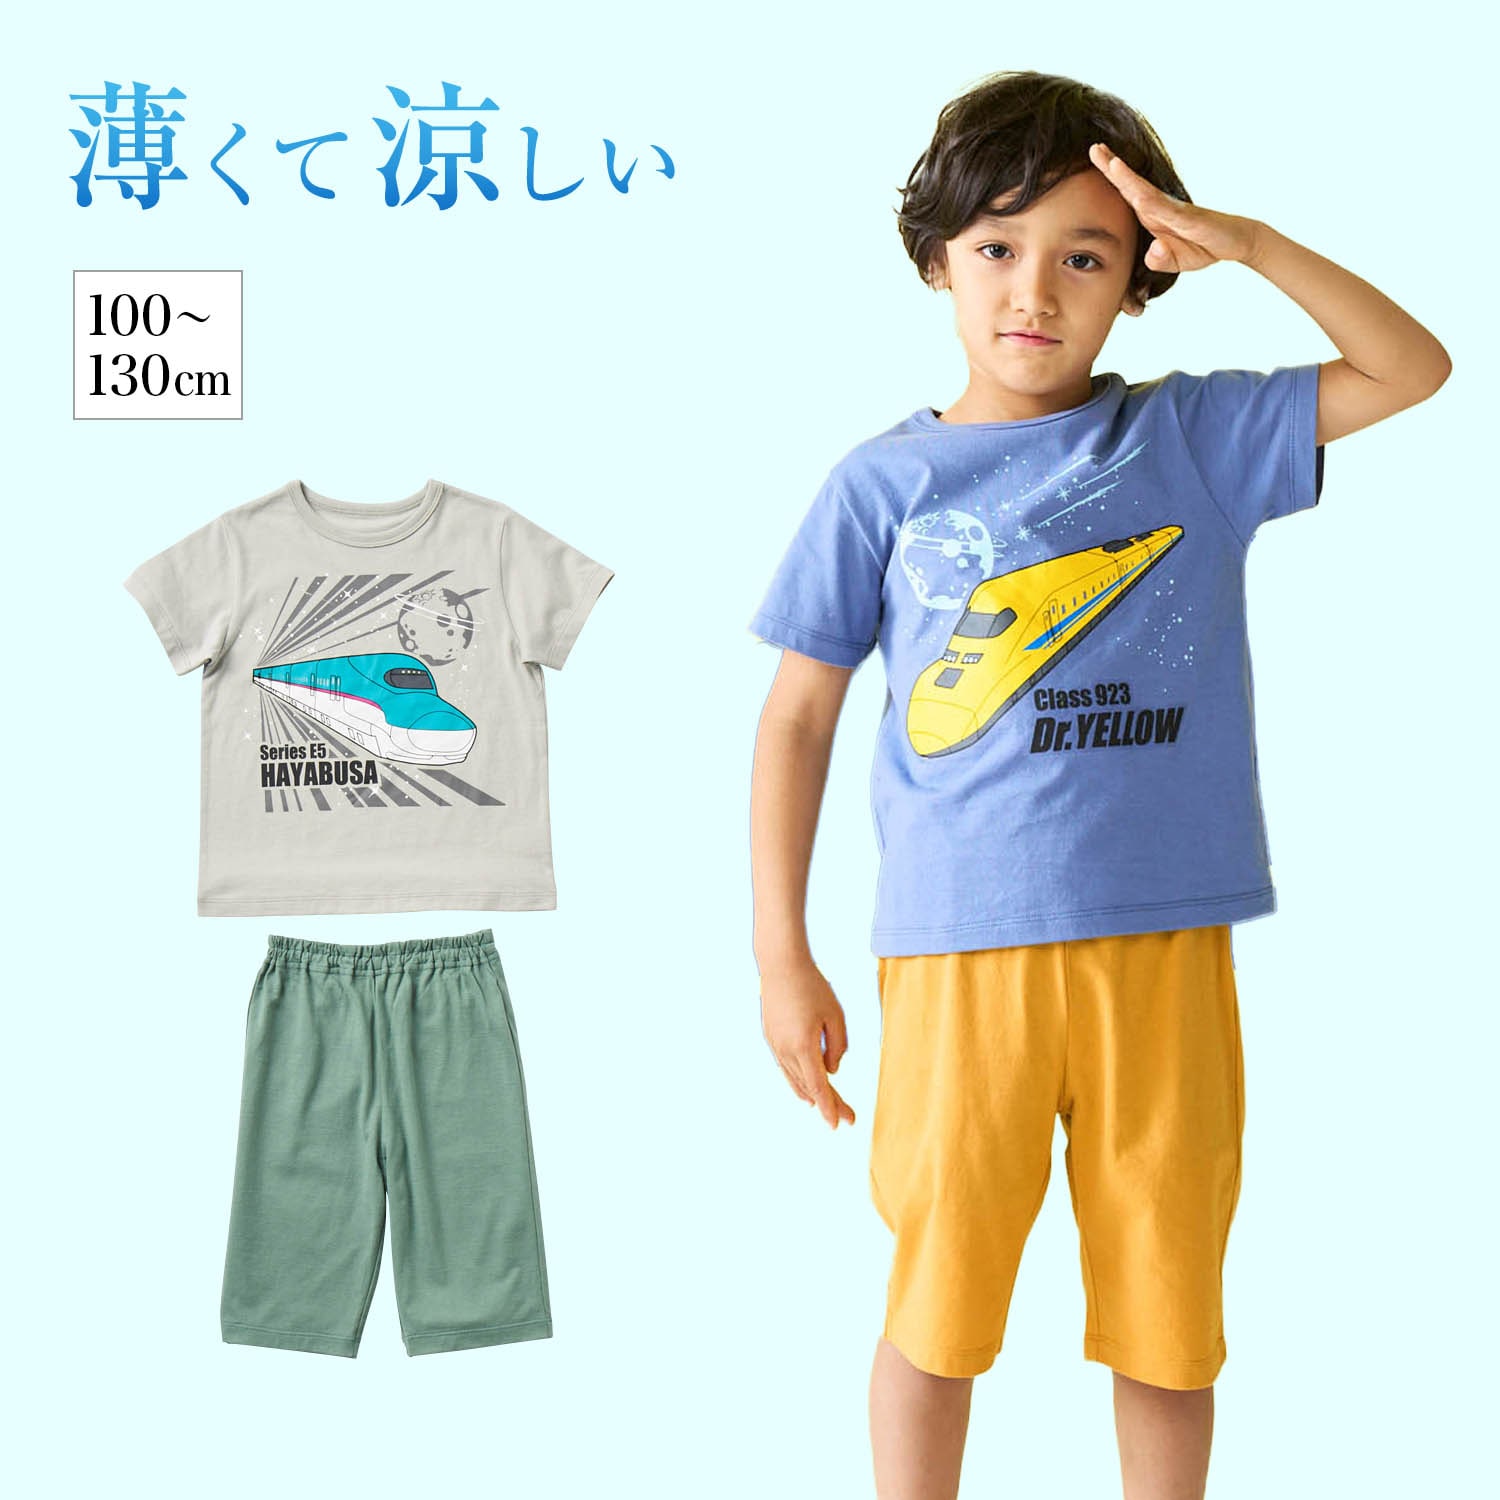 【鉄道シリーズ】薄くて涼しい蓄光半袖パジャマ「新幹線シリーズ」